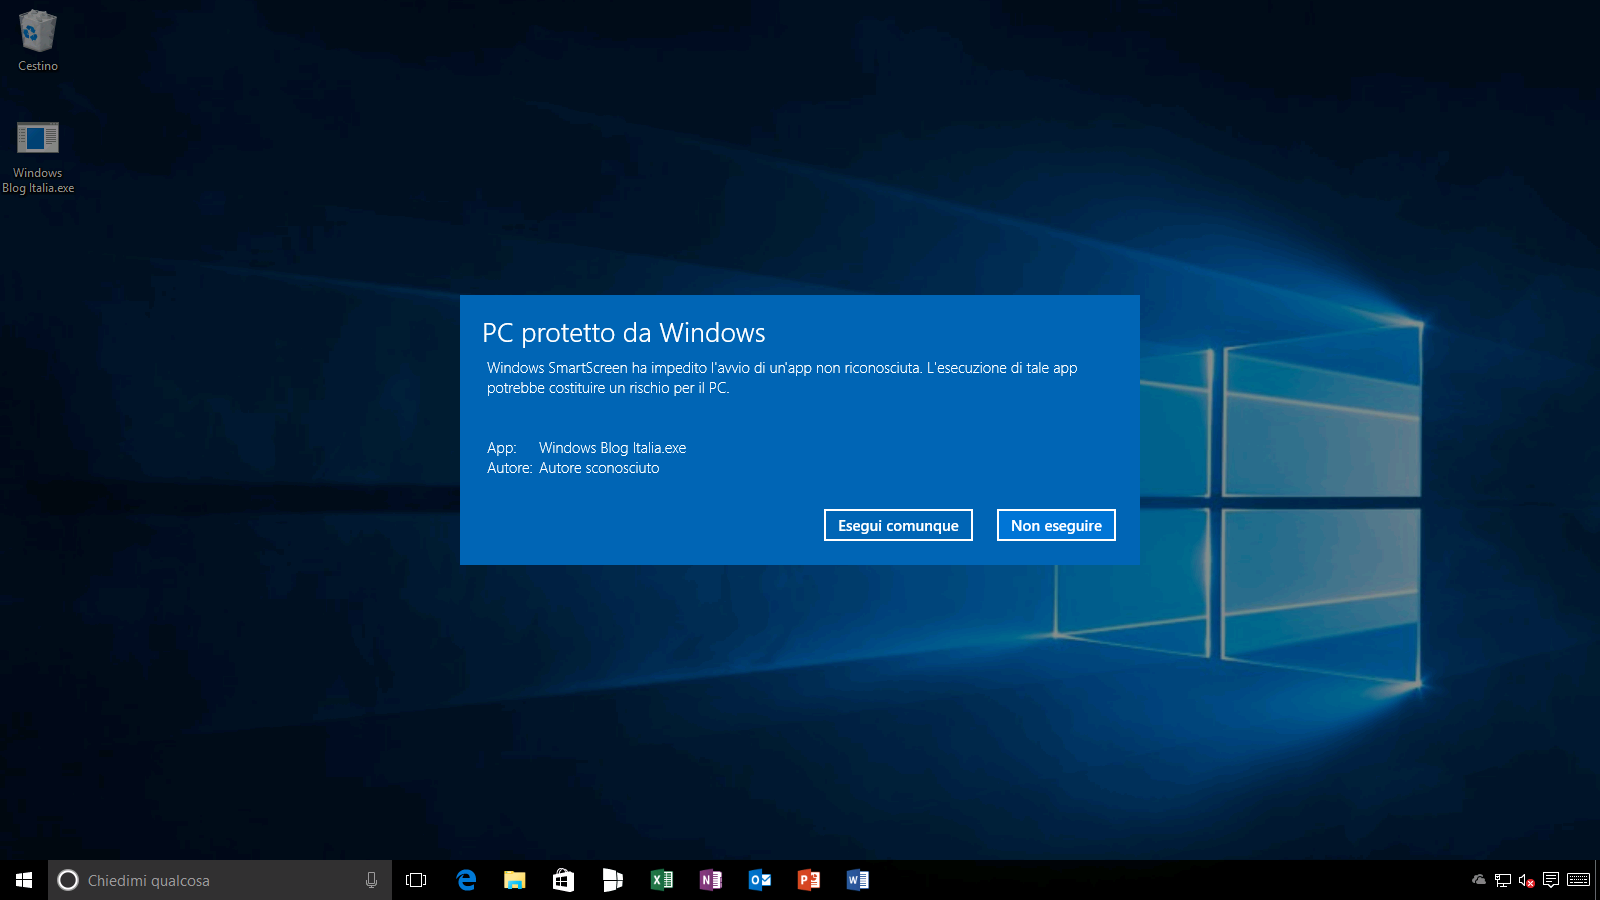 PC protetto da Windows (2) - Windows 10